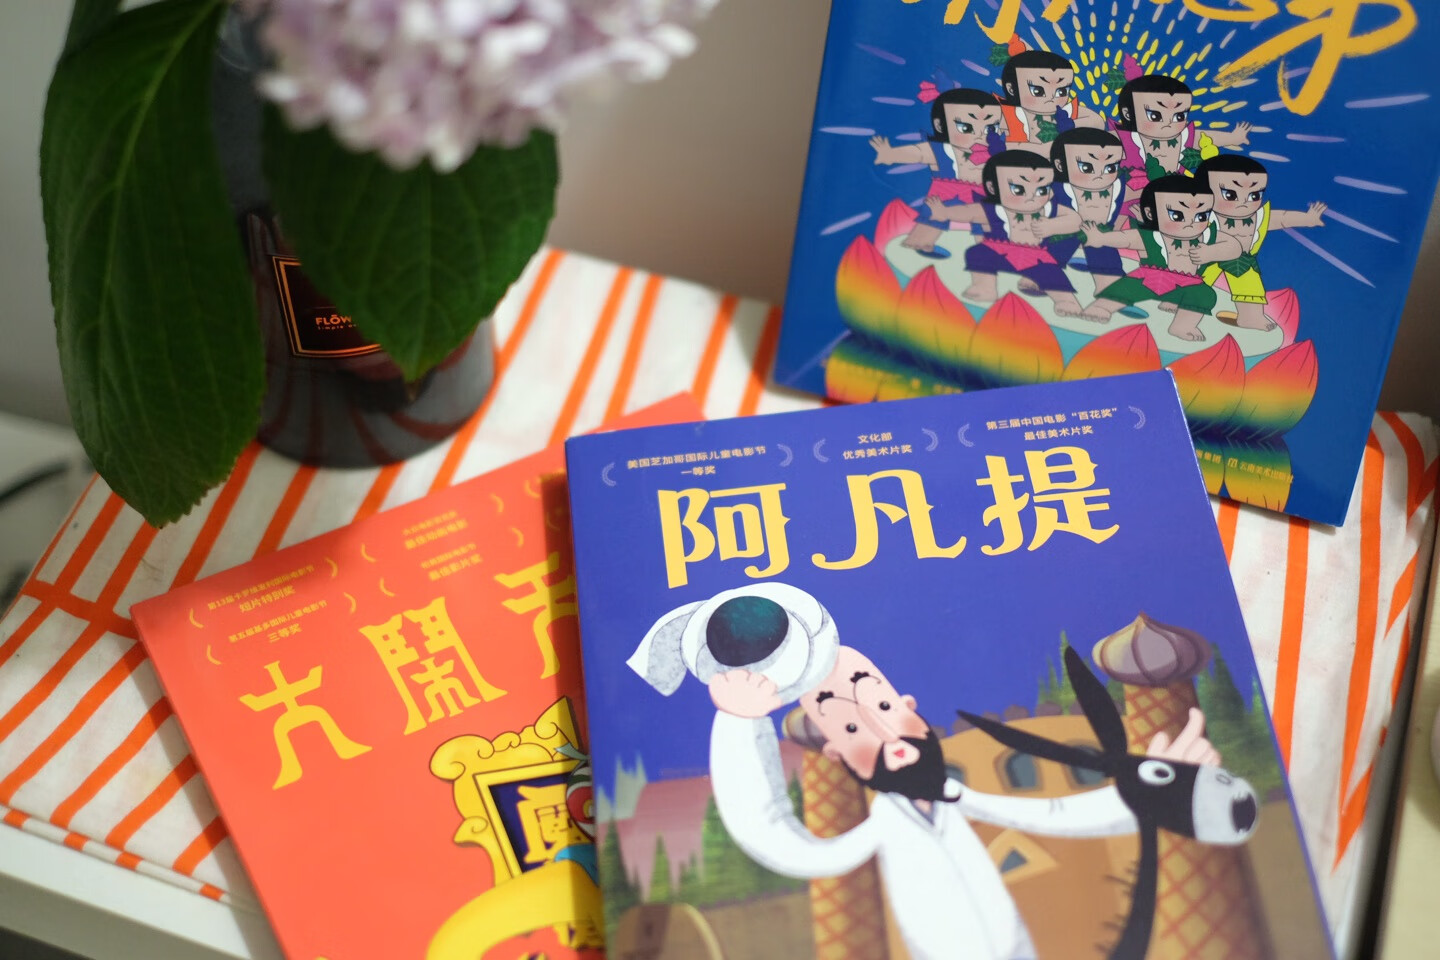 每个孩子的心里都住着一个上天入地，无所不能的美猴王，这就是经典的魅力。孩子在这套书里可以看到精彩的内容，看到美猴王身上的闪光点，也能看到传统元素，感受中国文化的韵味，真心不错的优质童书，特别喜欢。值得购买，推荐给大家！